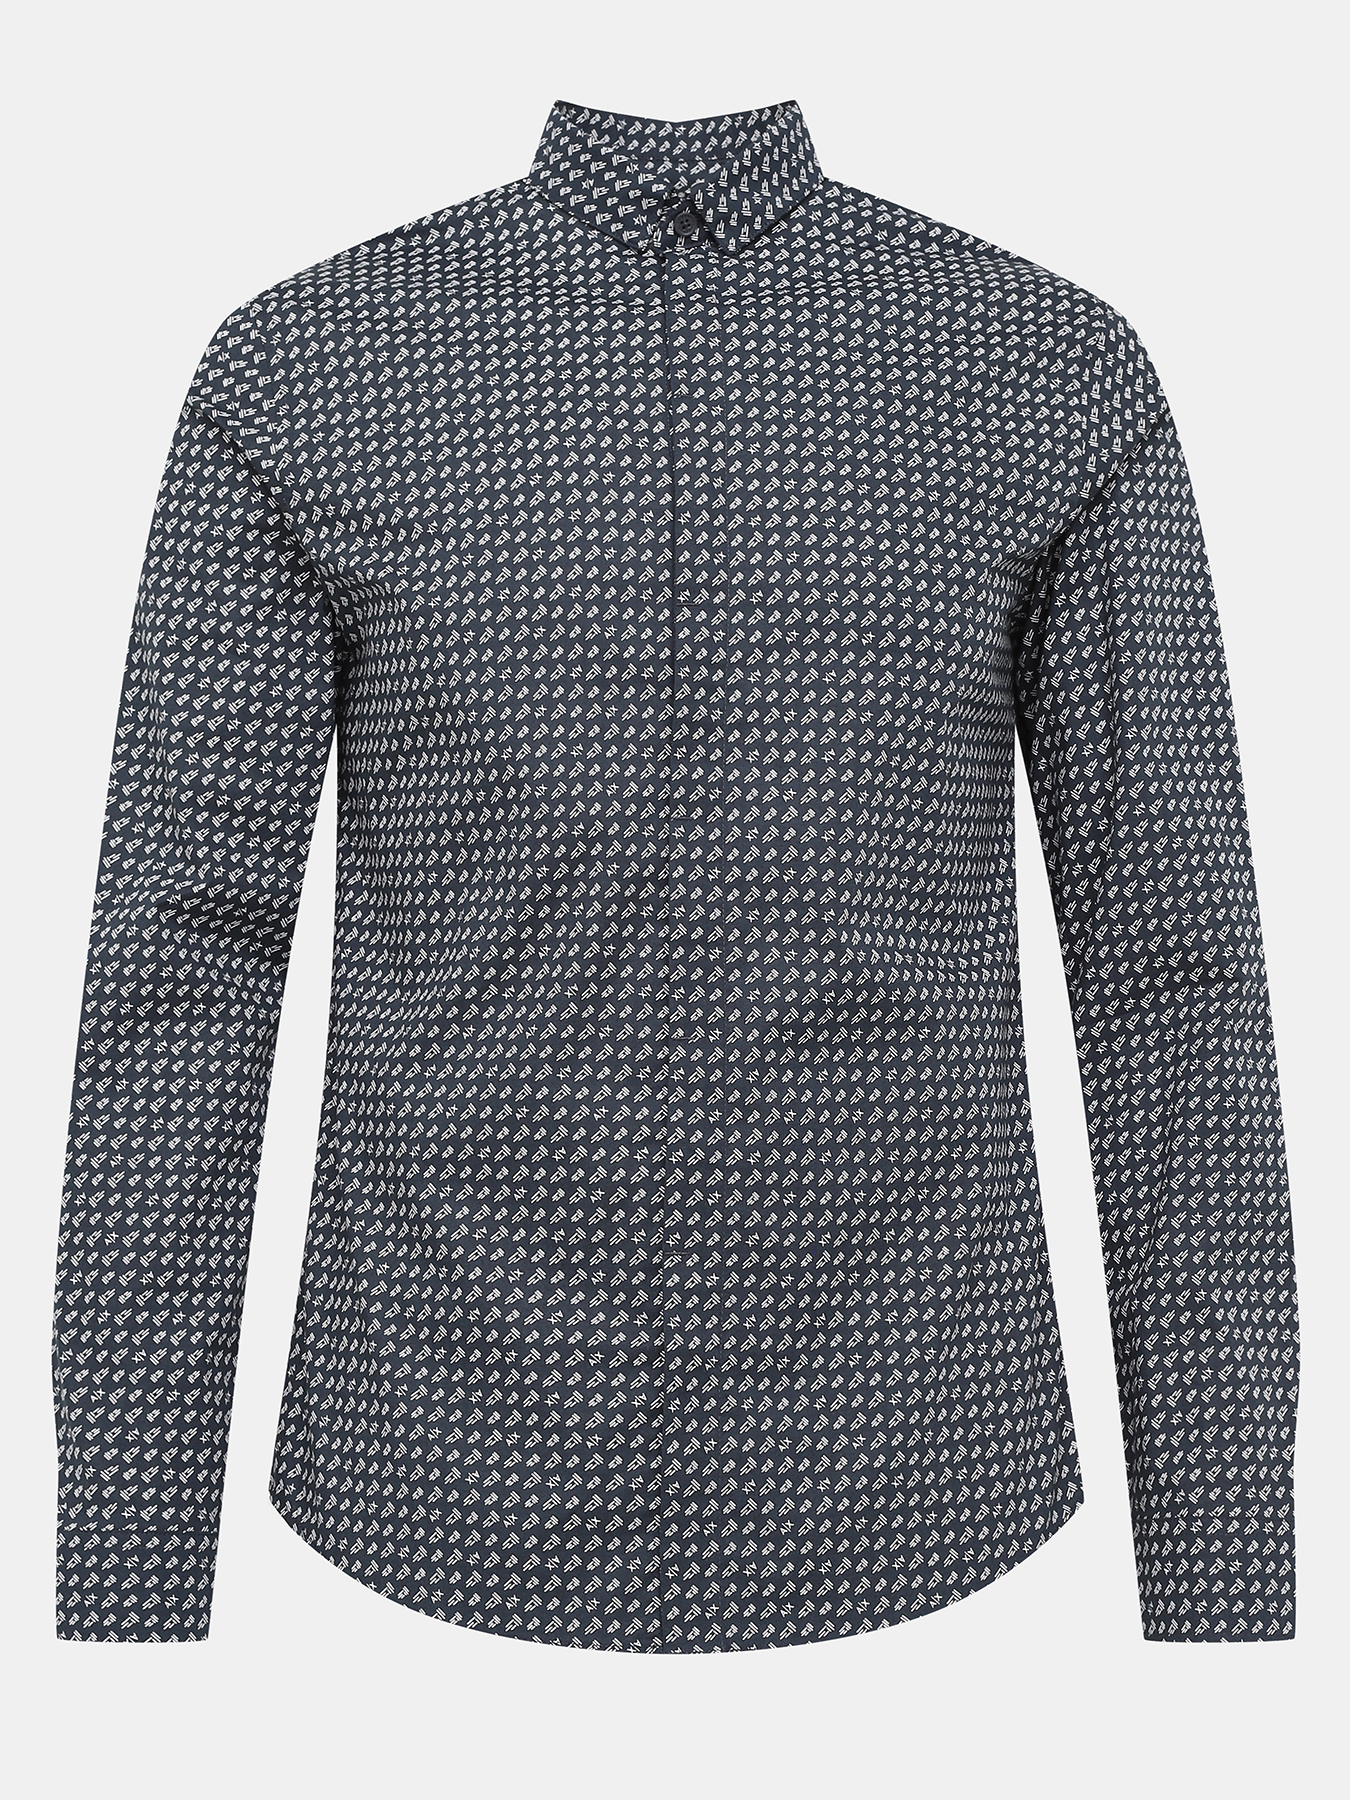 Рубашка Armani Exchange 422271-045, цвет темно-синий, размер 52-54 - фото 1